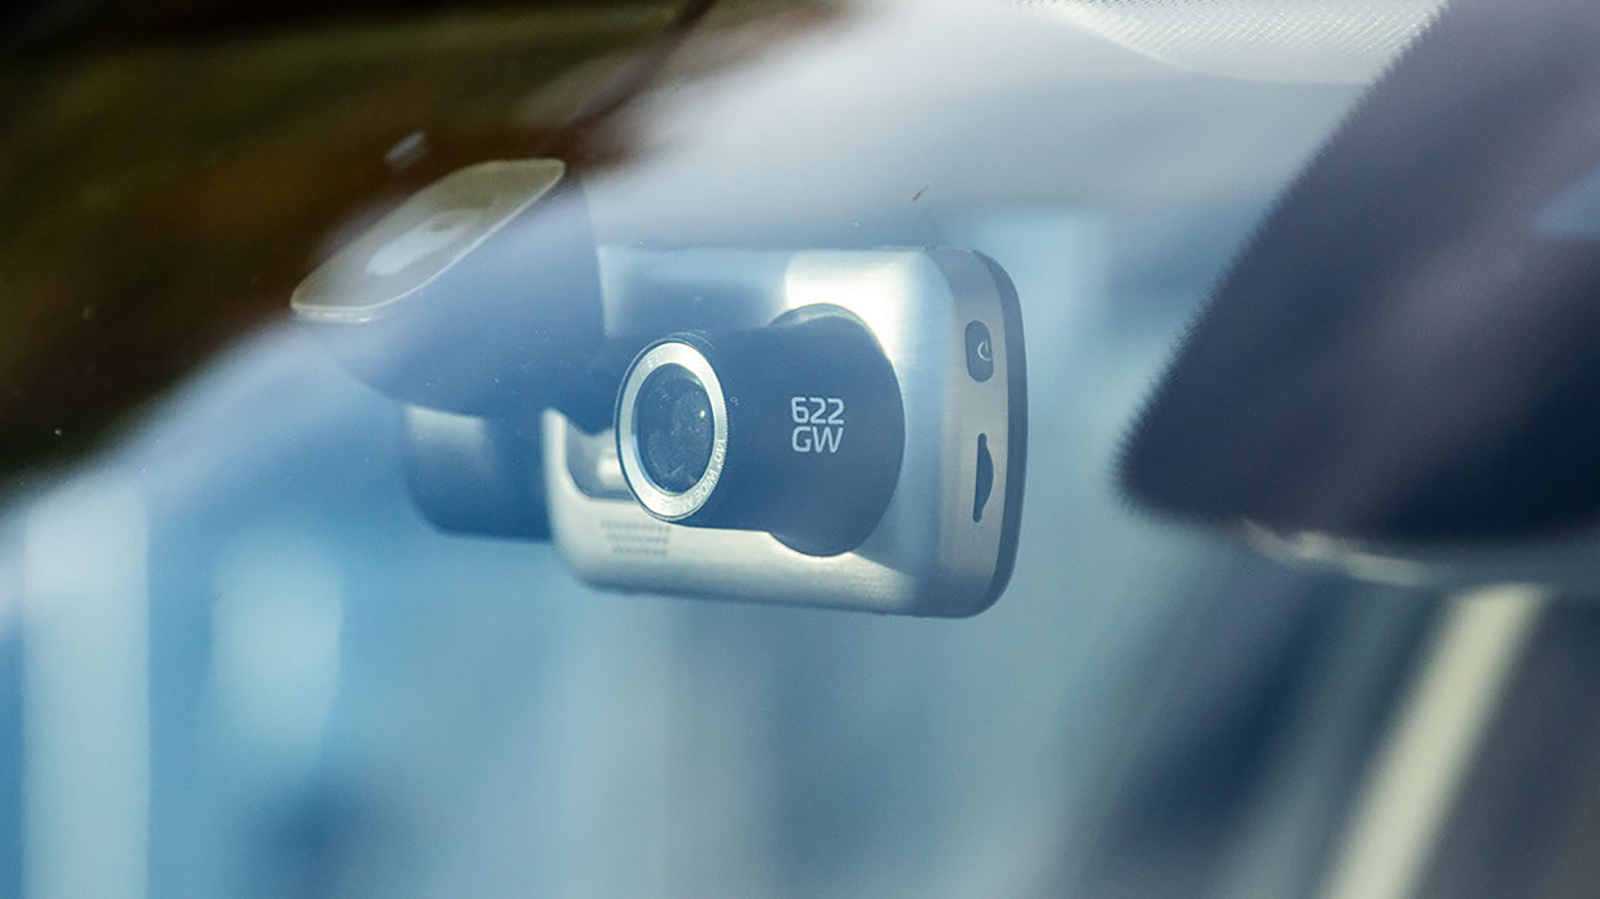  Kamery w samochodach coraz powszechniejsze